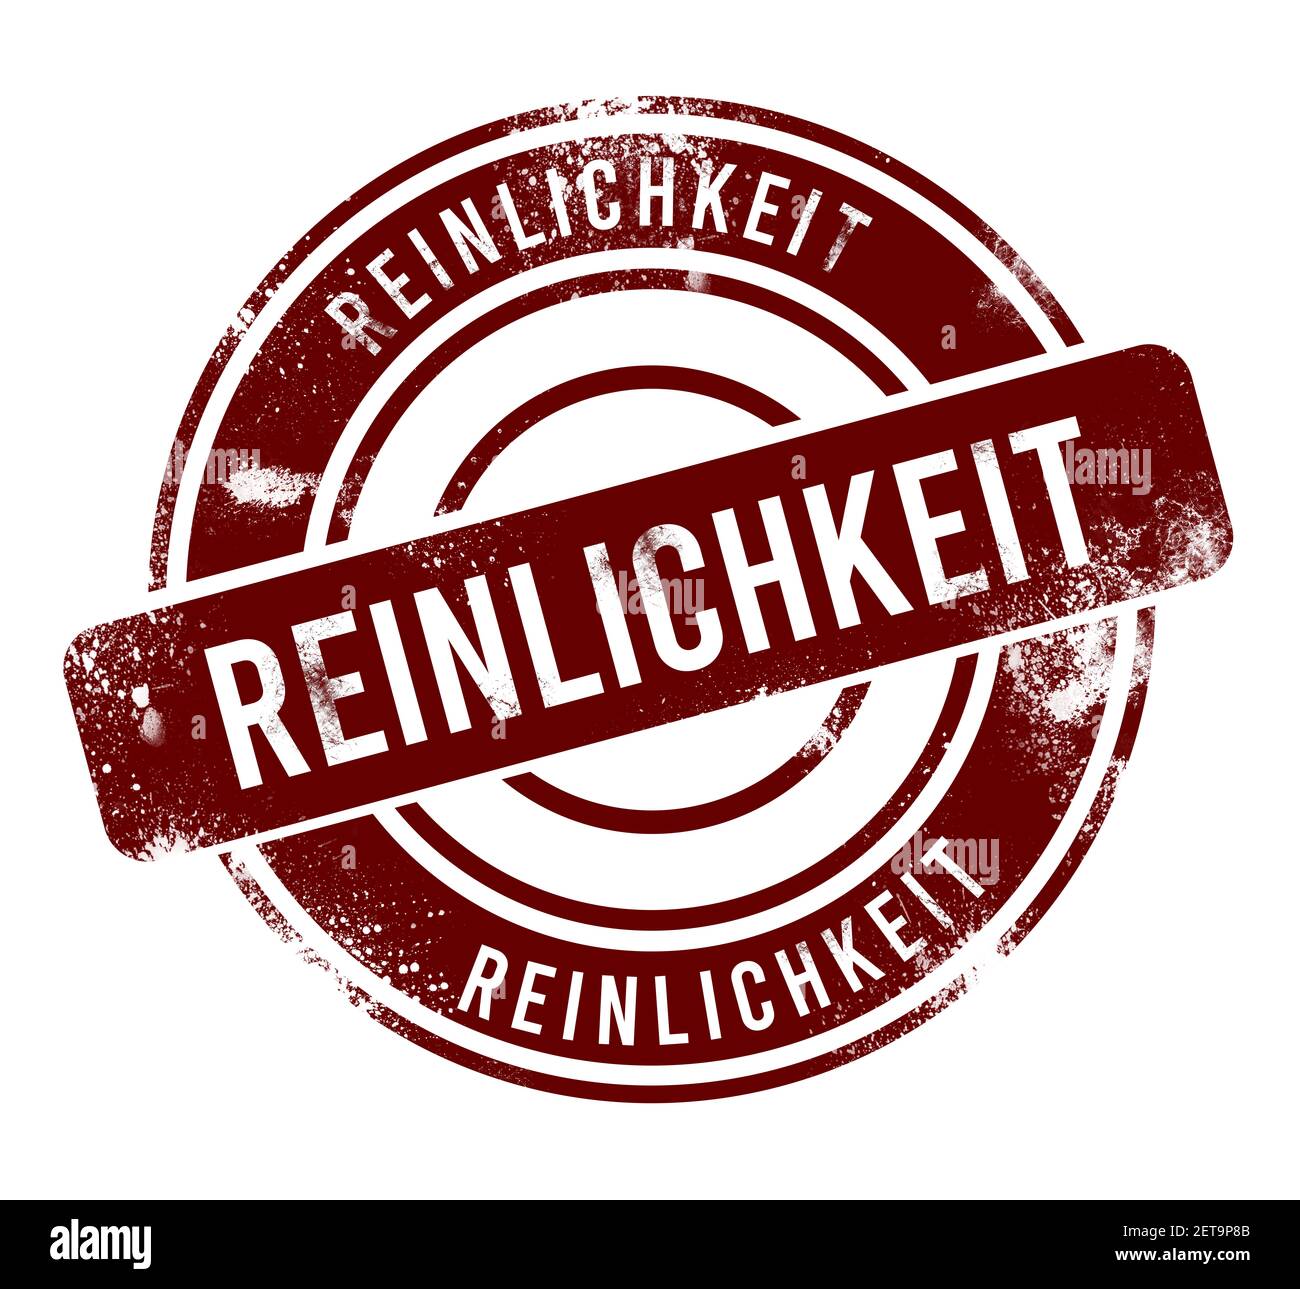 reinlickkeit - bouton rond rouge de grunge, timbre Banque D'Images